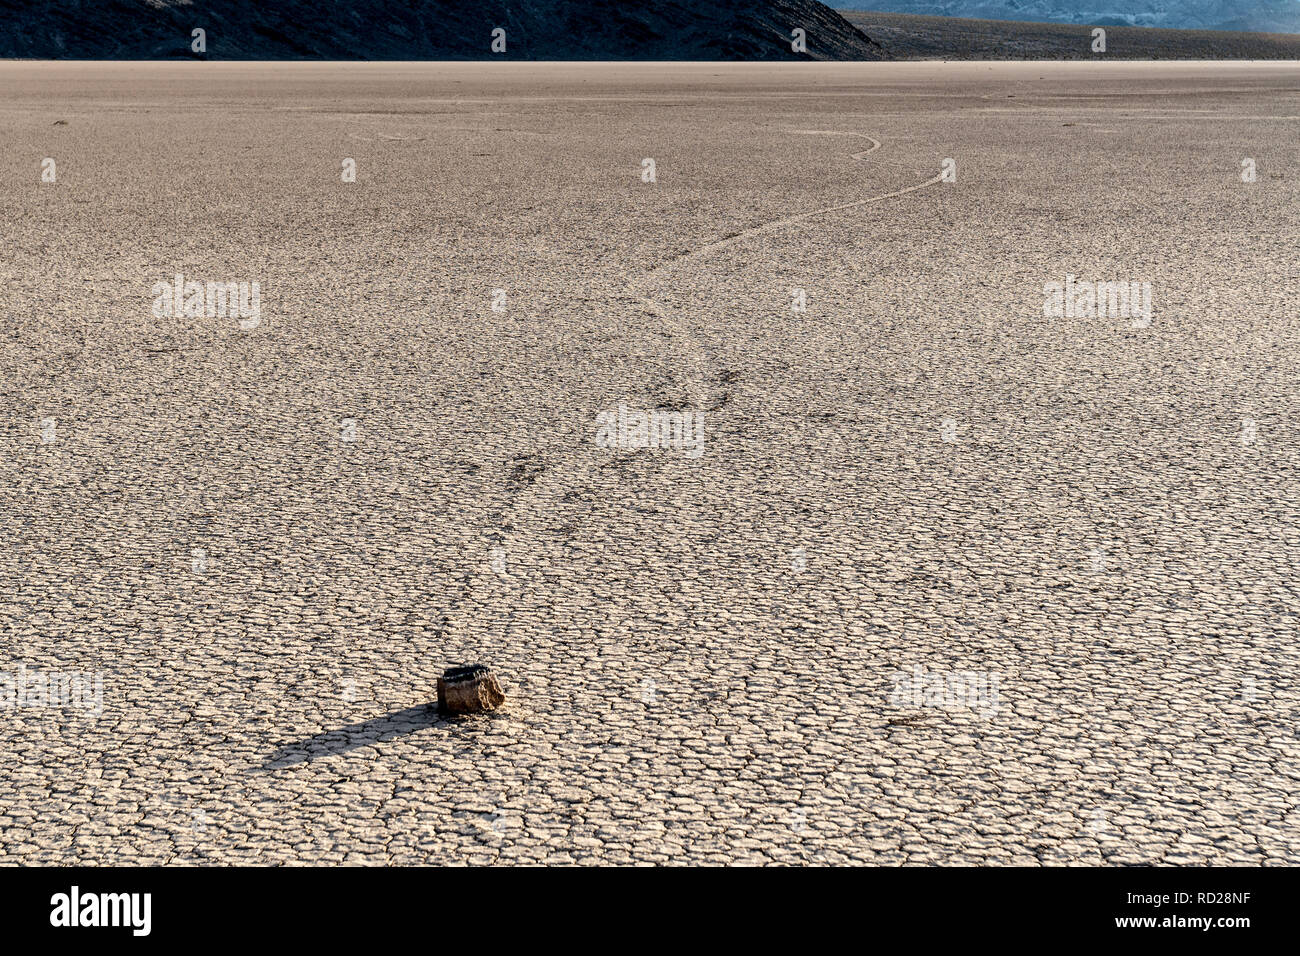 Segeln Felsen hinterlassen Spuren im Schlamm wie Sie sich bewegen, Racetrack Playa, Death Valley National Park, Kalifornien Stockfoto